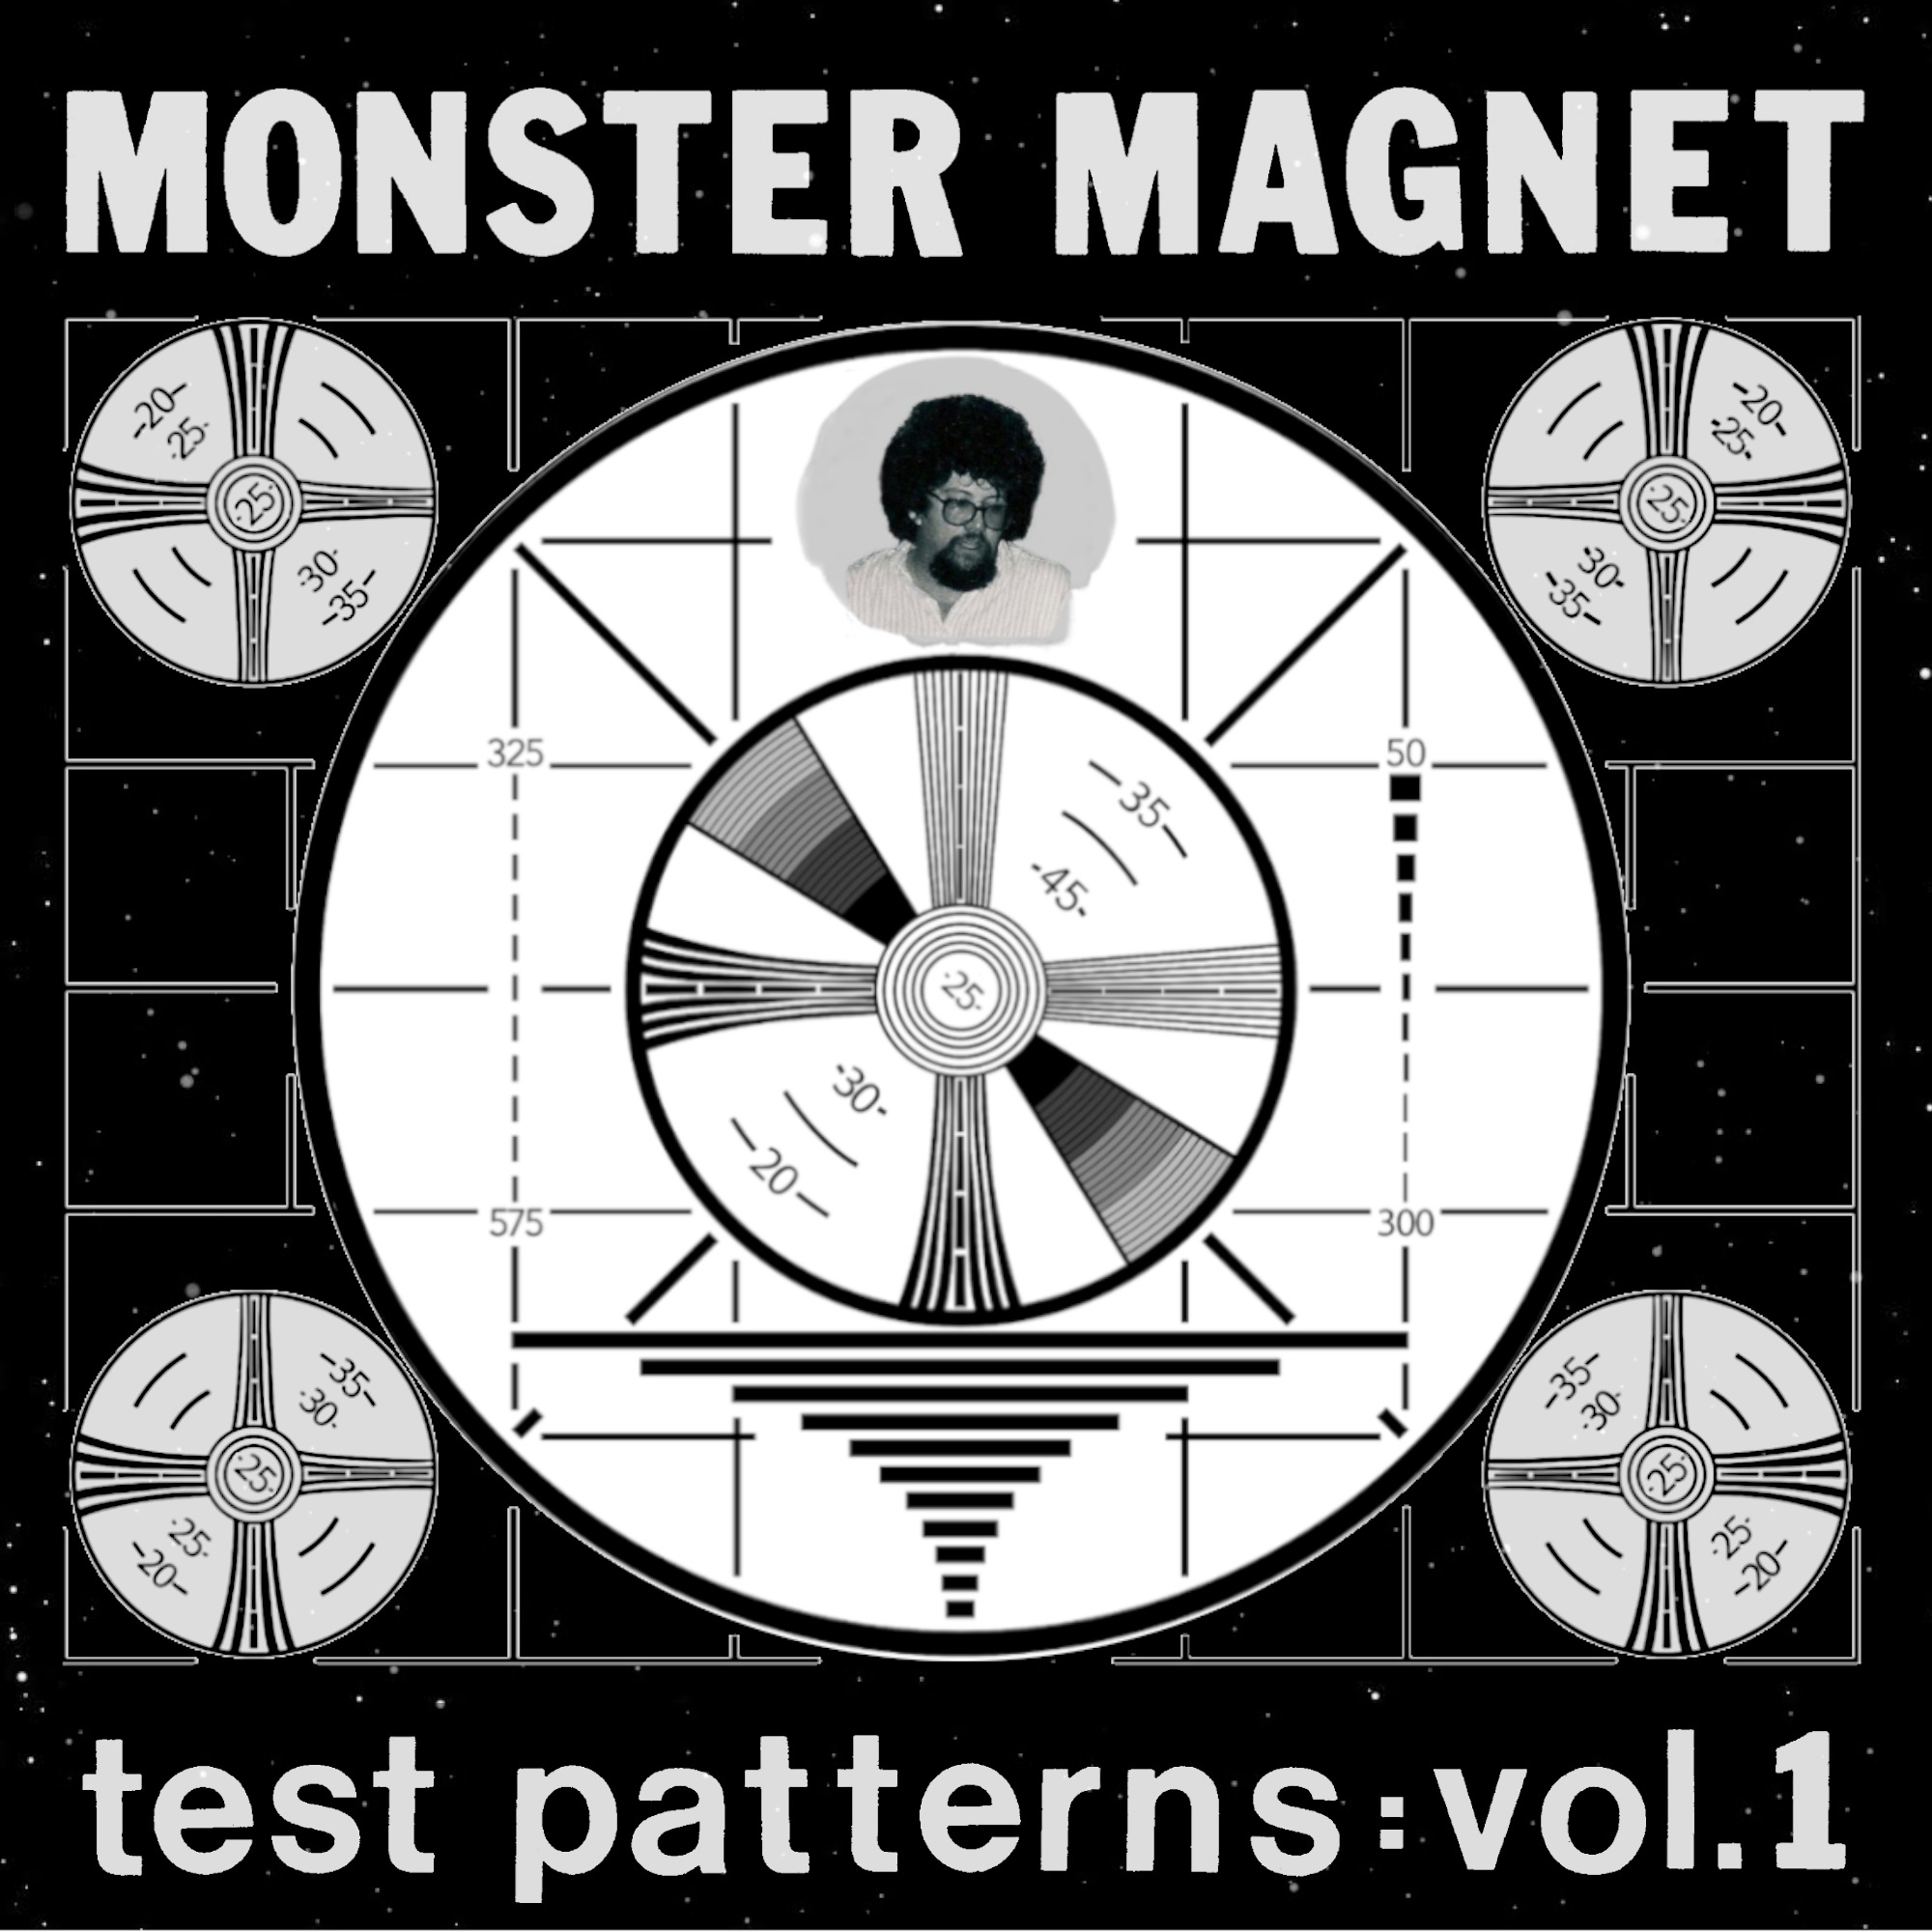 Album artwork for Album artwork for Test Patterns Vol. 1 by Monster Magnet by Test Patterns Vol. 1 - Monster Magnet